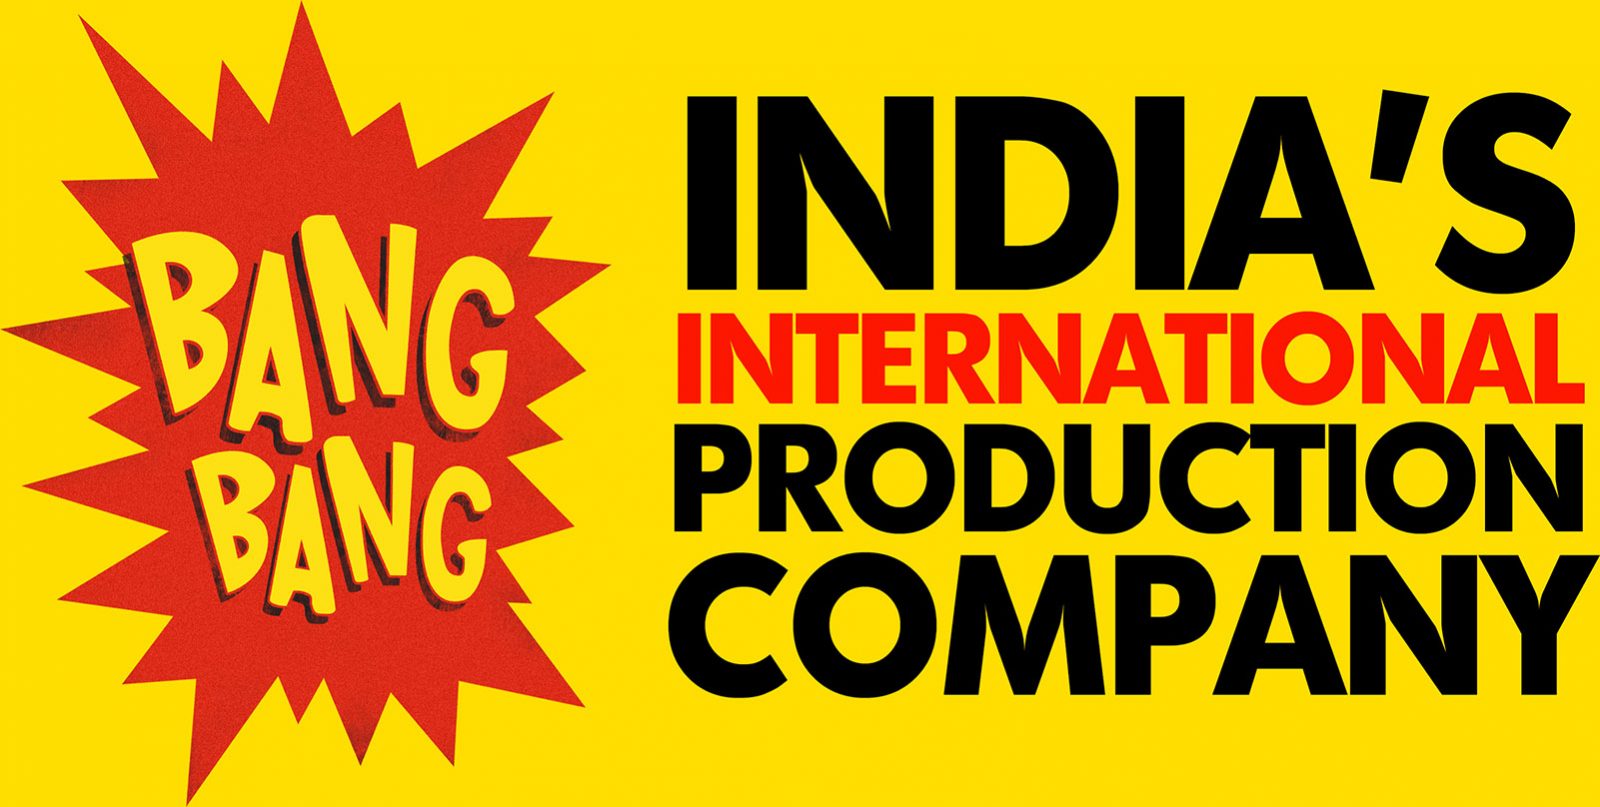 BANG BANG - India’s International Production Company